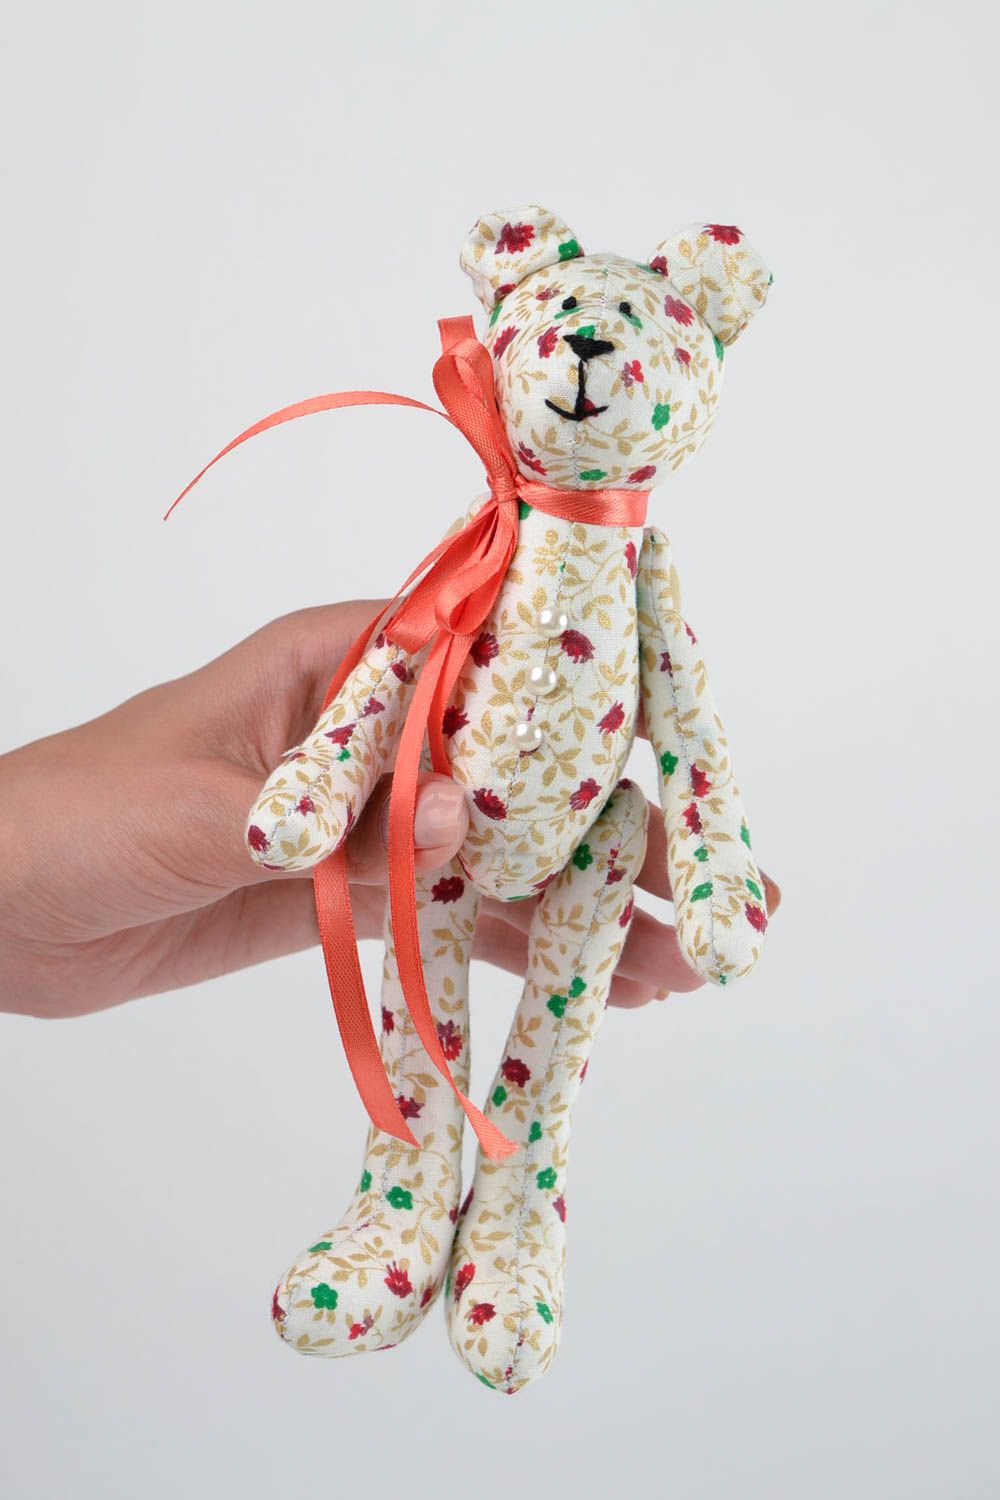 Jouet Ours en tissu de coton fait main à motif floral Cadeau pour enfant photo 2